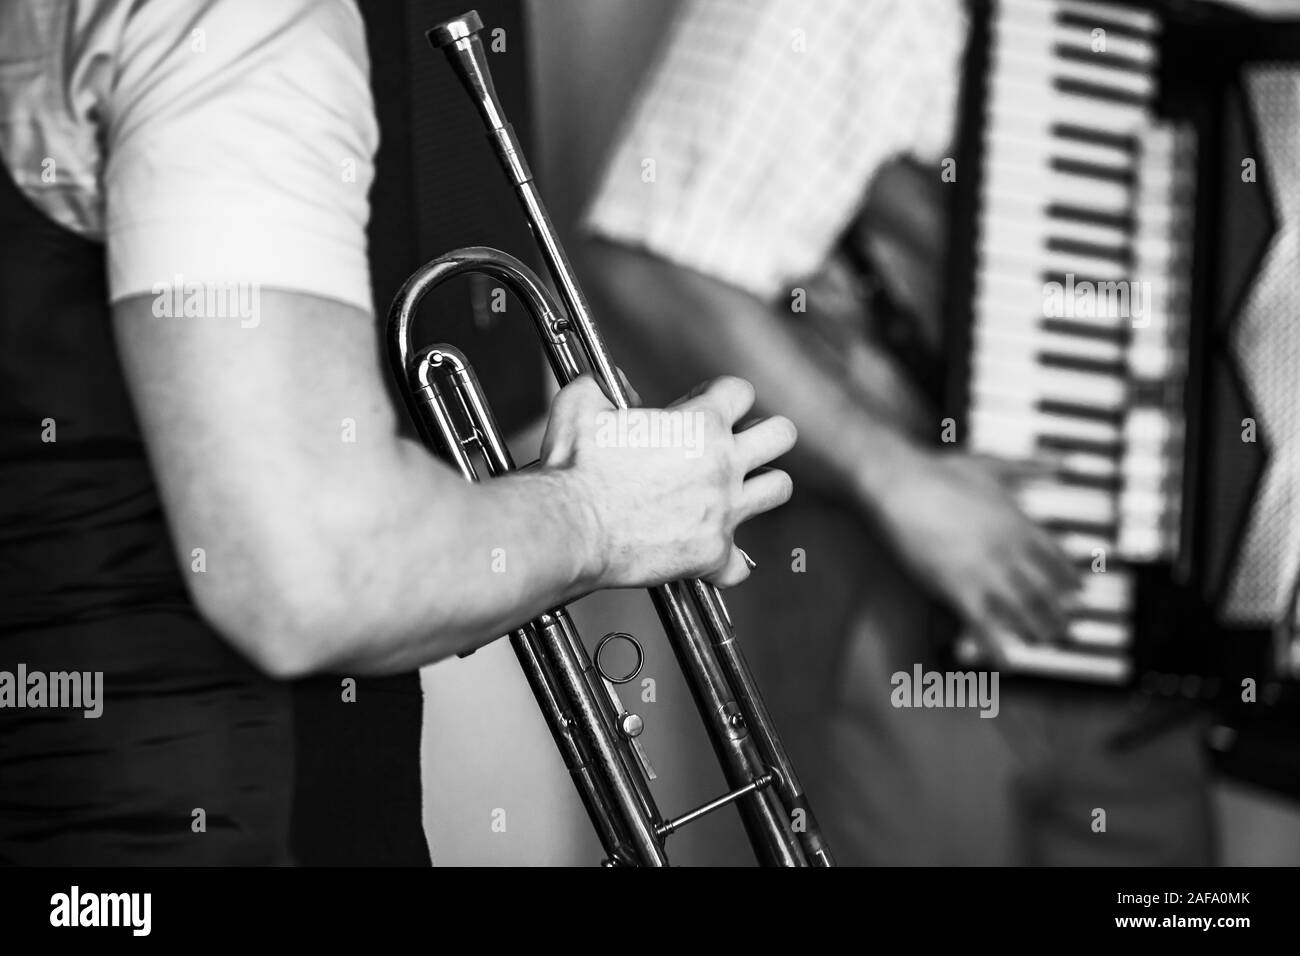 Musicien trompette en mains. Retro photo noir et blanc stylisé, live music background Banque D'Images